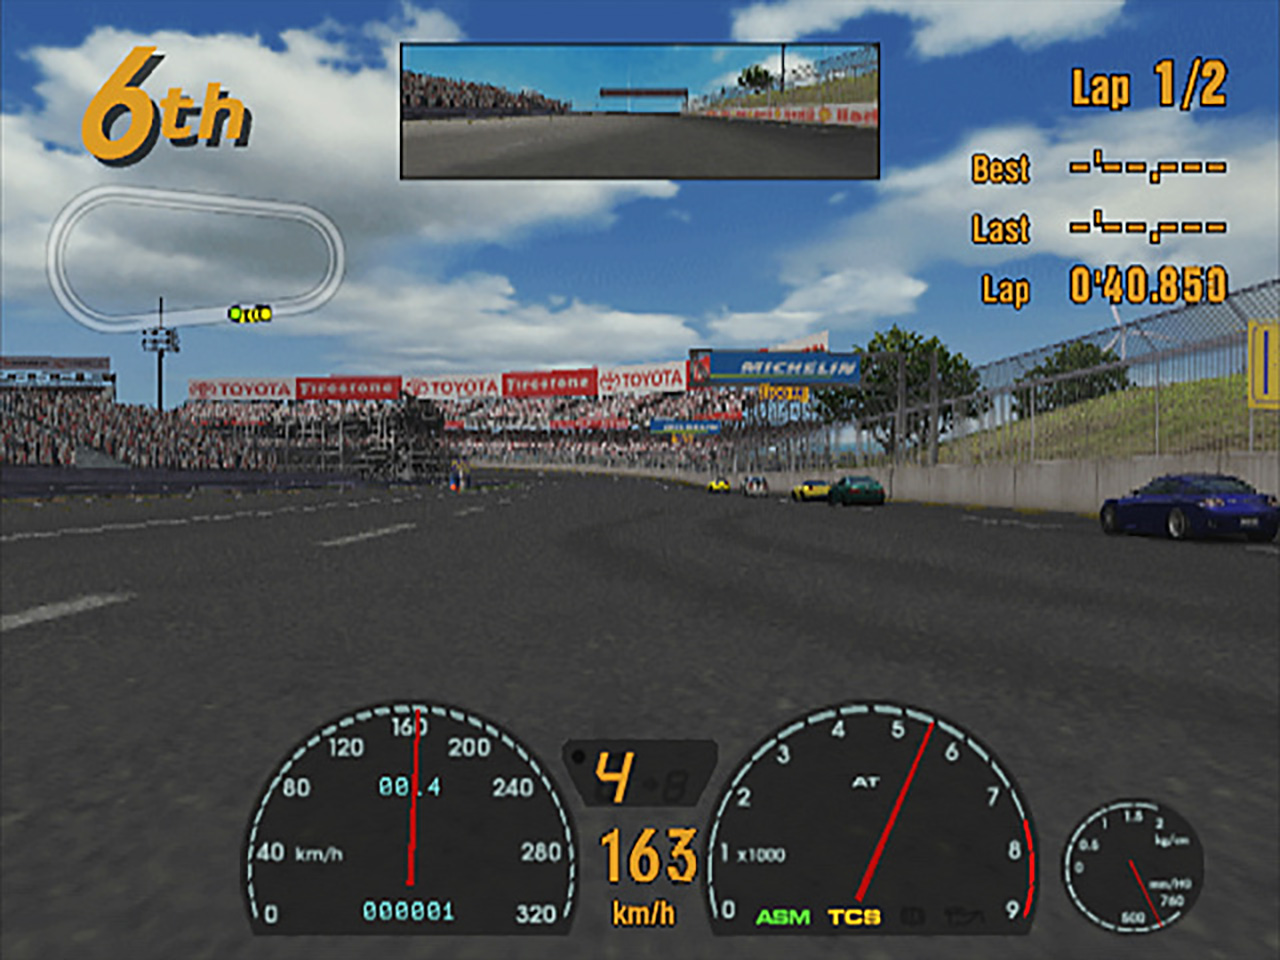 Gran Turismo 3 A-Spec - グランツーリスモ・ドットコム